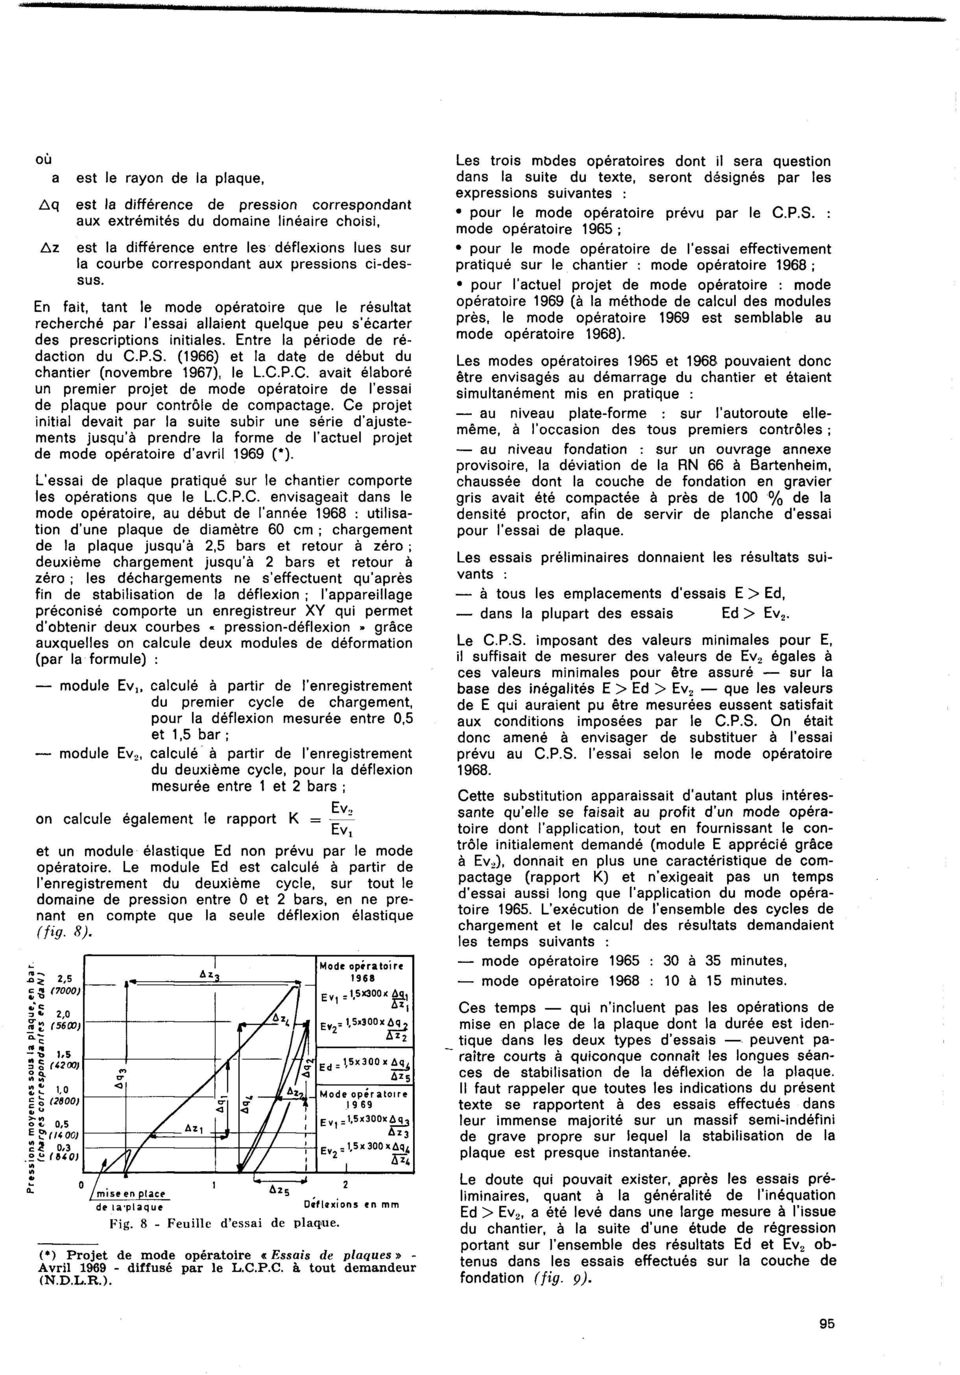 (1966) et la date de début du chantier (novembre 1967), le LC.P.C. avait élaboré un premier projet de mode opératoire de l'essai de plaque pour contrôle de compactage.